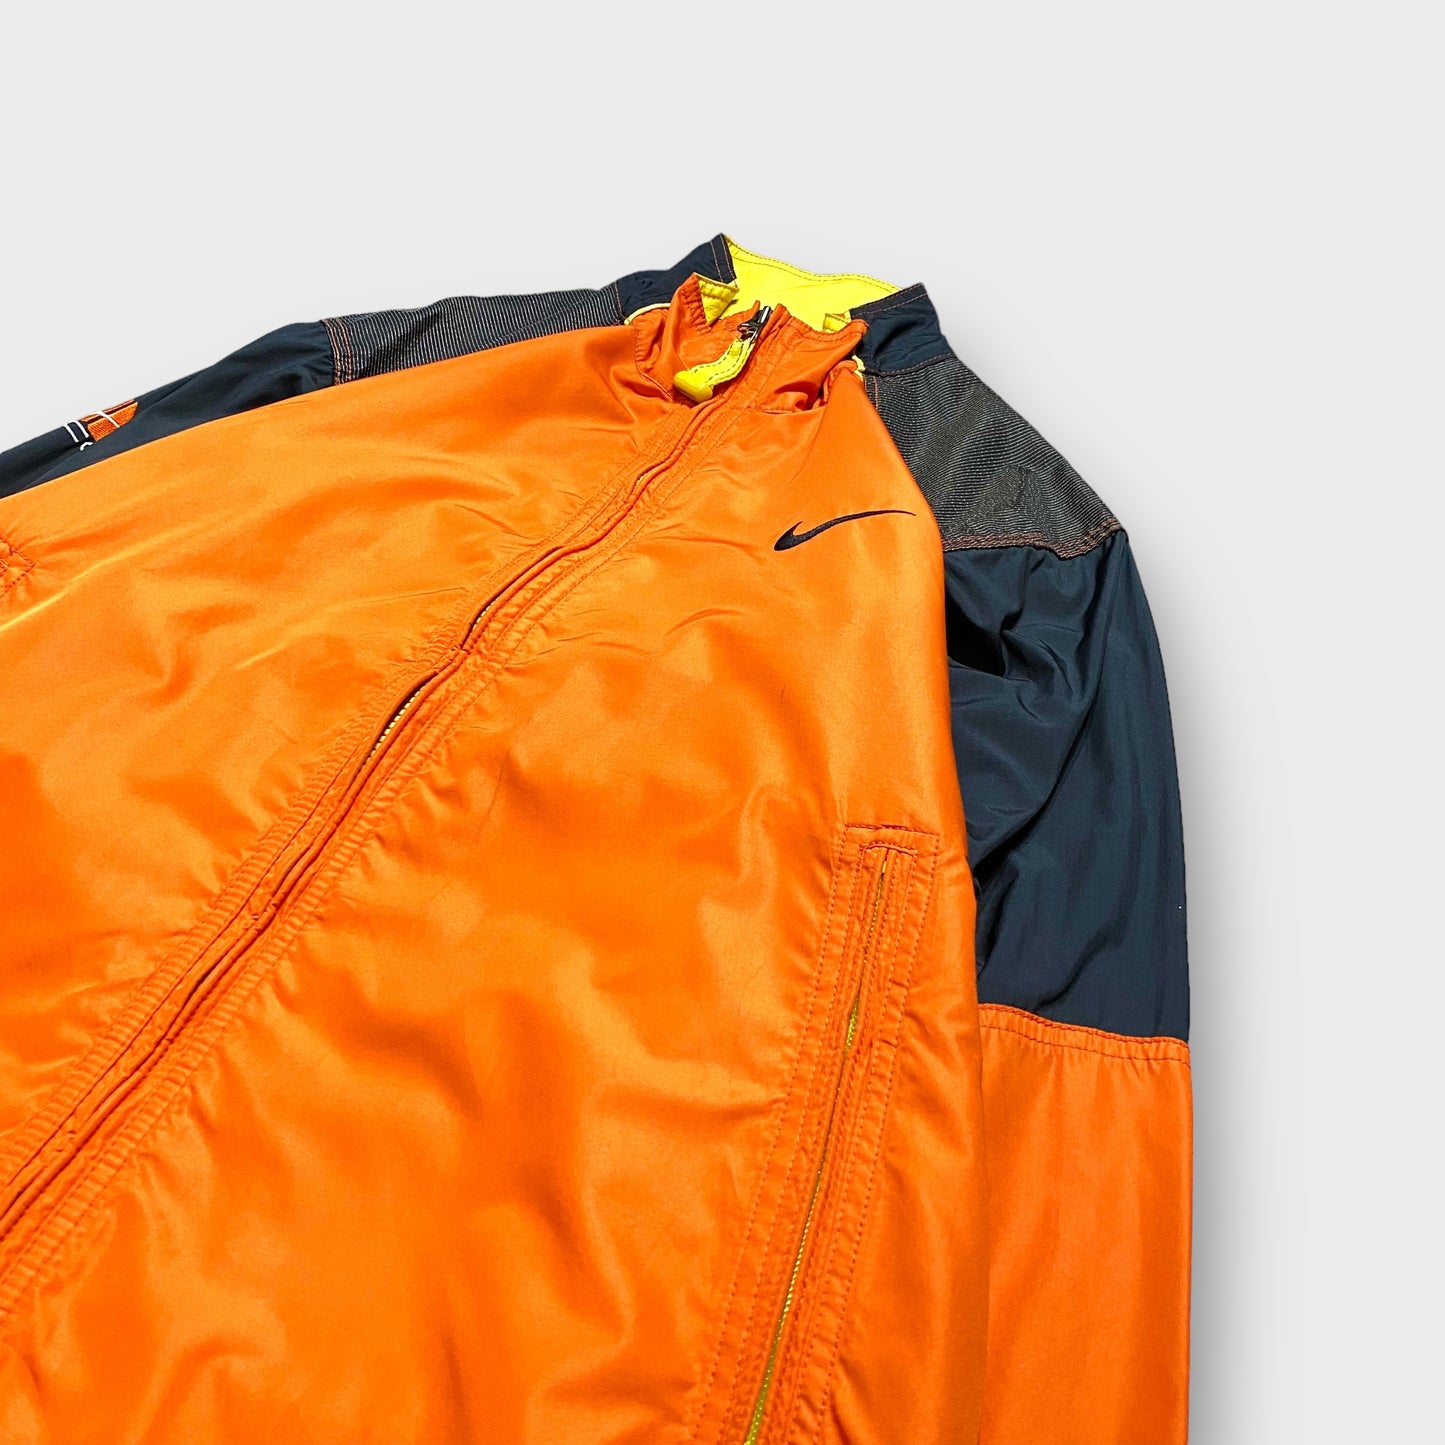 90's "NIKE ACG" Nylon jacket